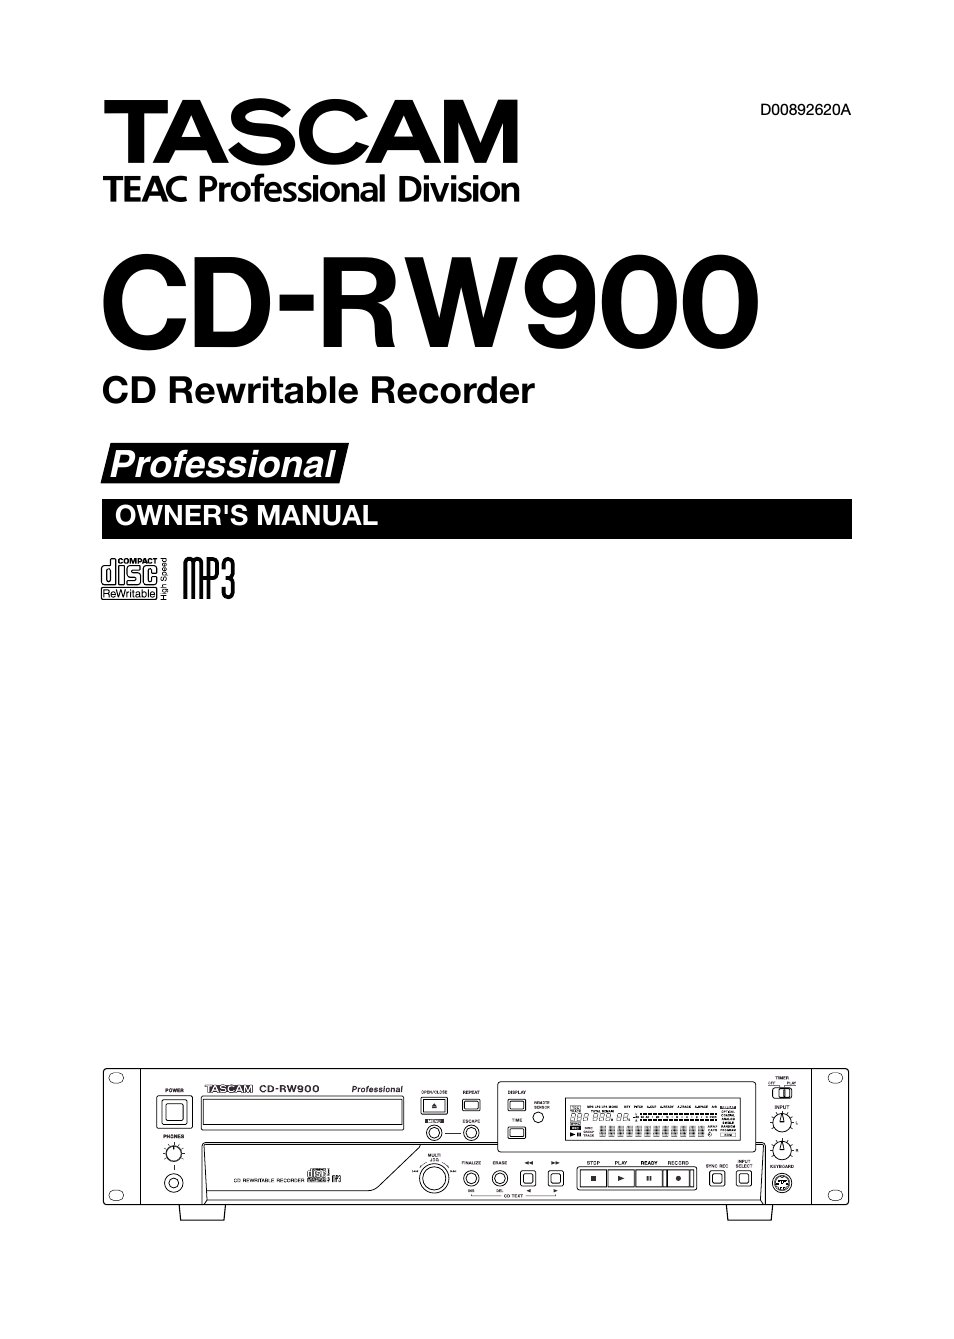 CD-RW900CD